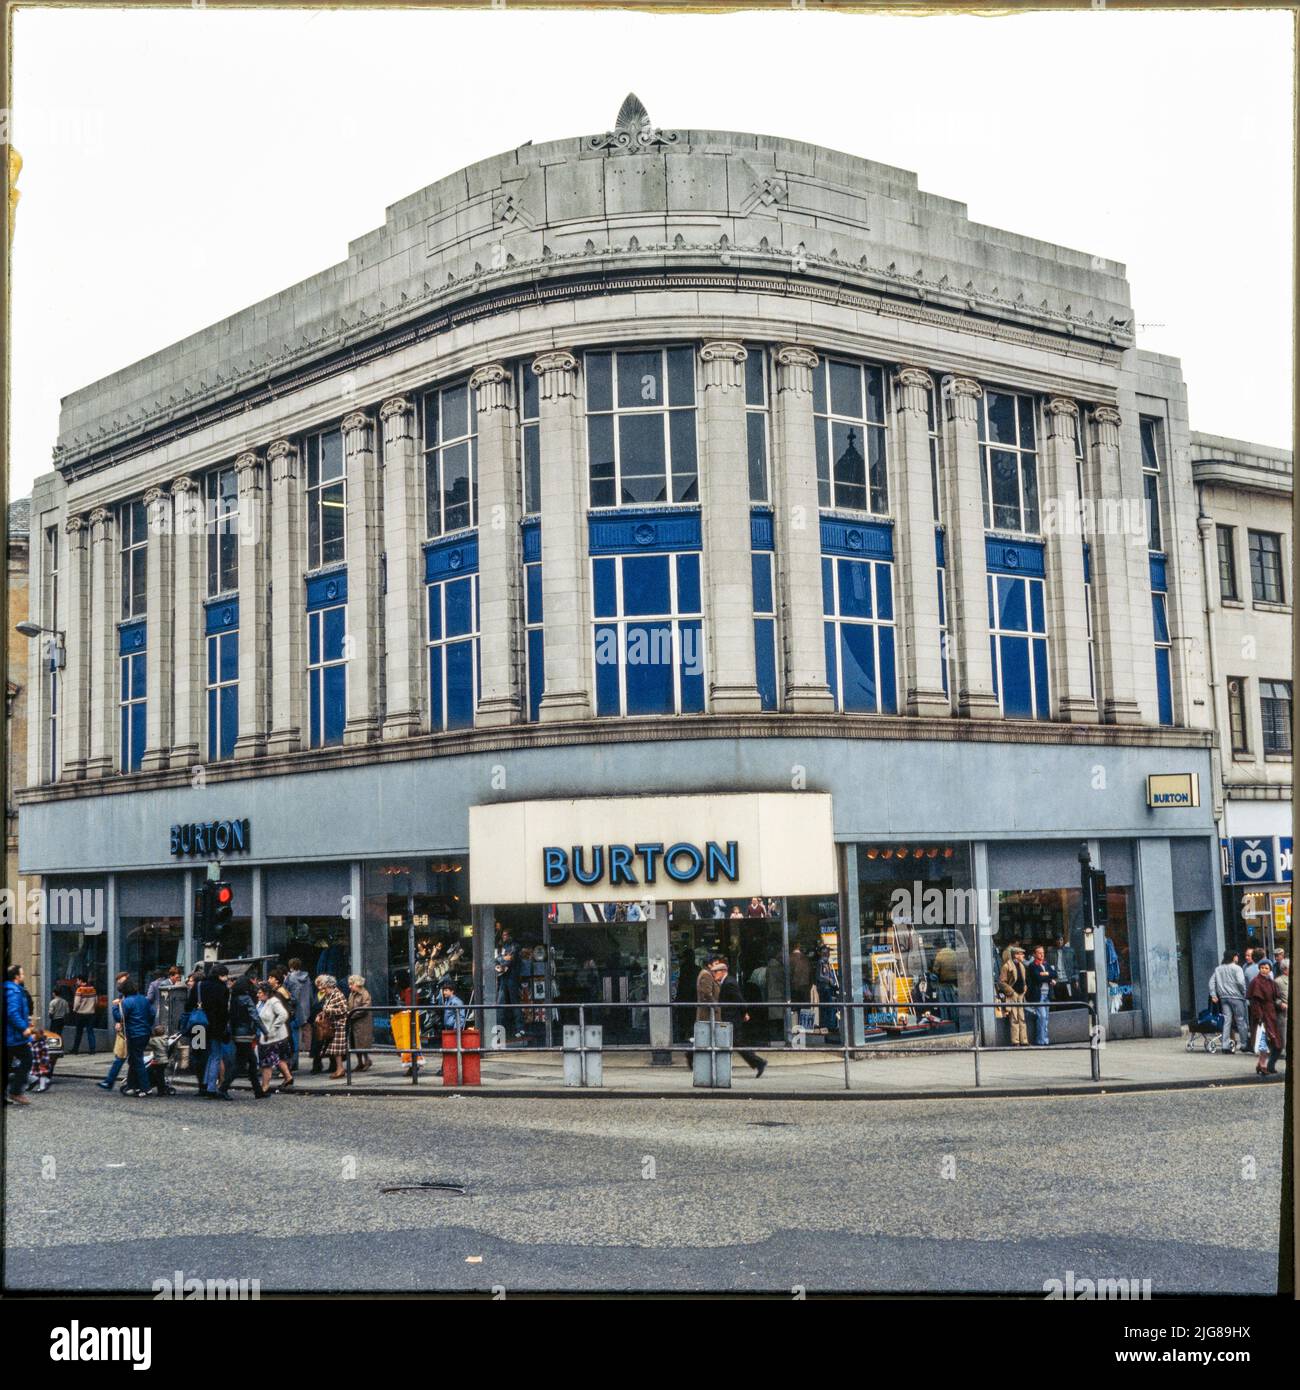 Burton, 6-8 High Street, Paisley, Renfrewshire, Écosse, 1970s-1980s. Le magasin Burton, à l'angle de High Street et Gilmour Street, montre les pilastres ioniques géants des premier et deuxième étages et le parapet ci-dessus. Le magasin Burton a été construit vers 1929-1930. Il a fermé ses portes en tant que Burton et Dorothy Perkins en 2020-21. Banque D'Images